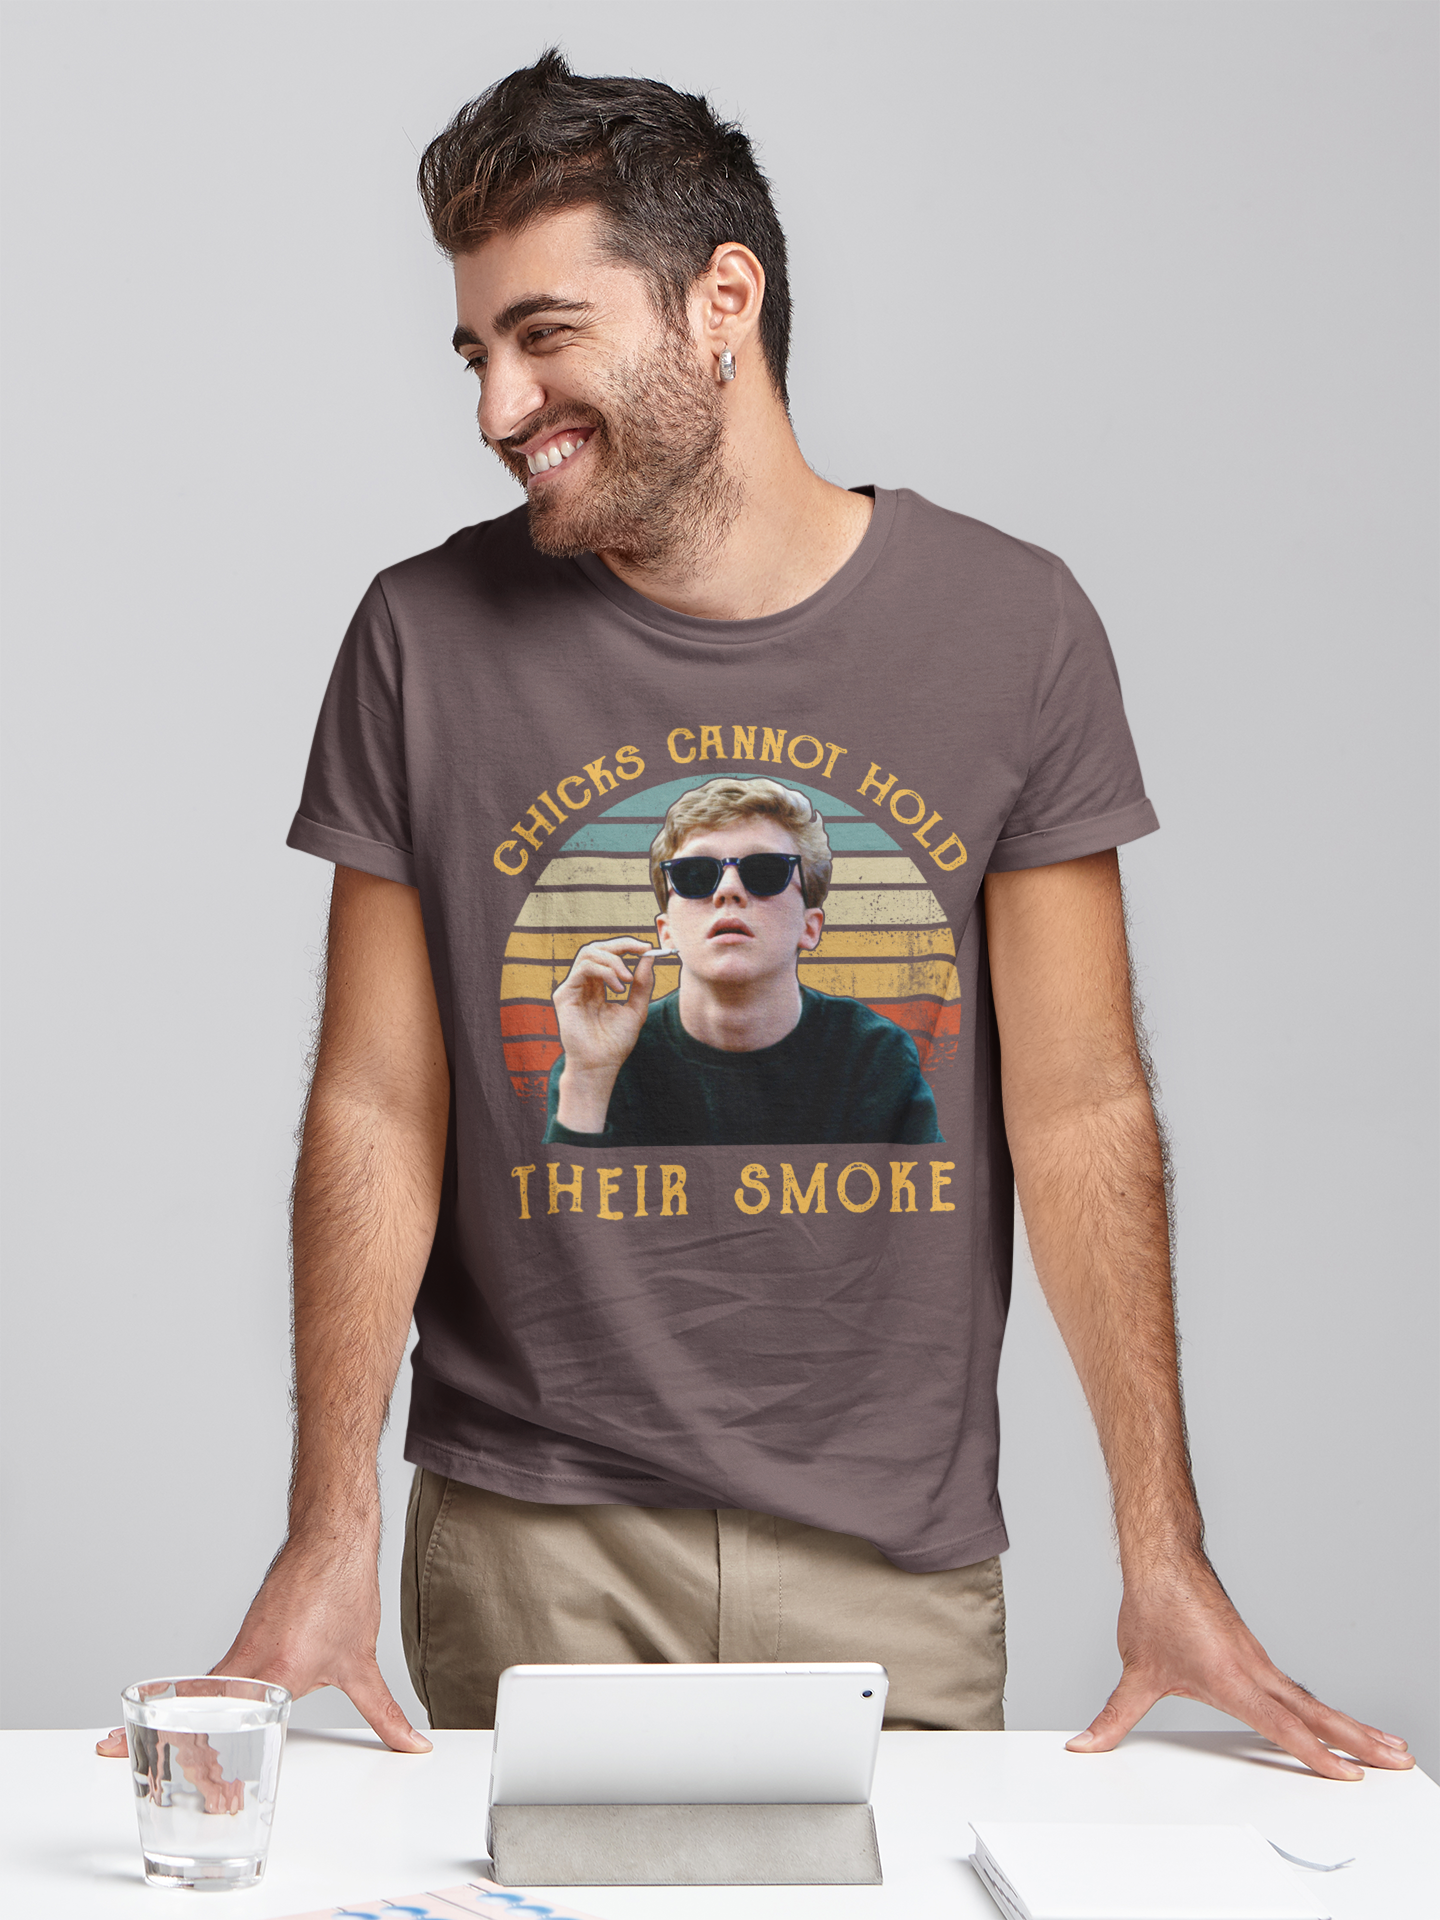 Breakfast Club Vintage T Shirt, Brian Johnson T Shirt, Chicks Cannot Hold Their Smoke Tshirt